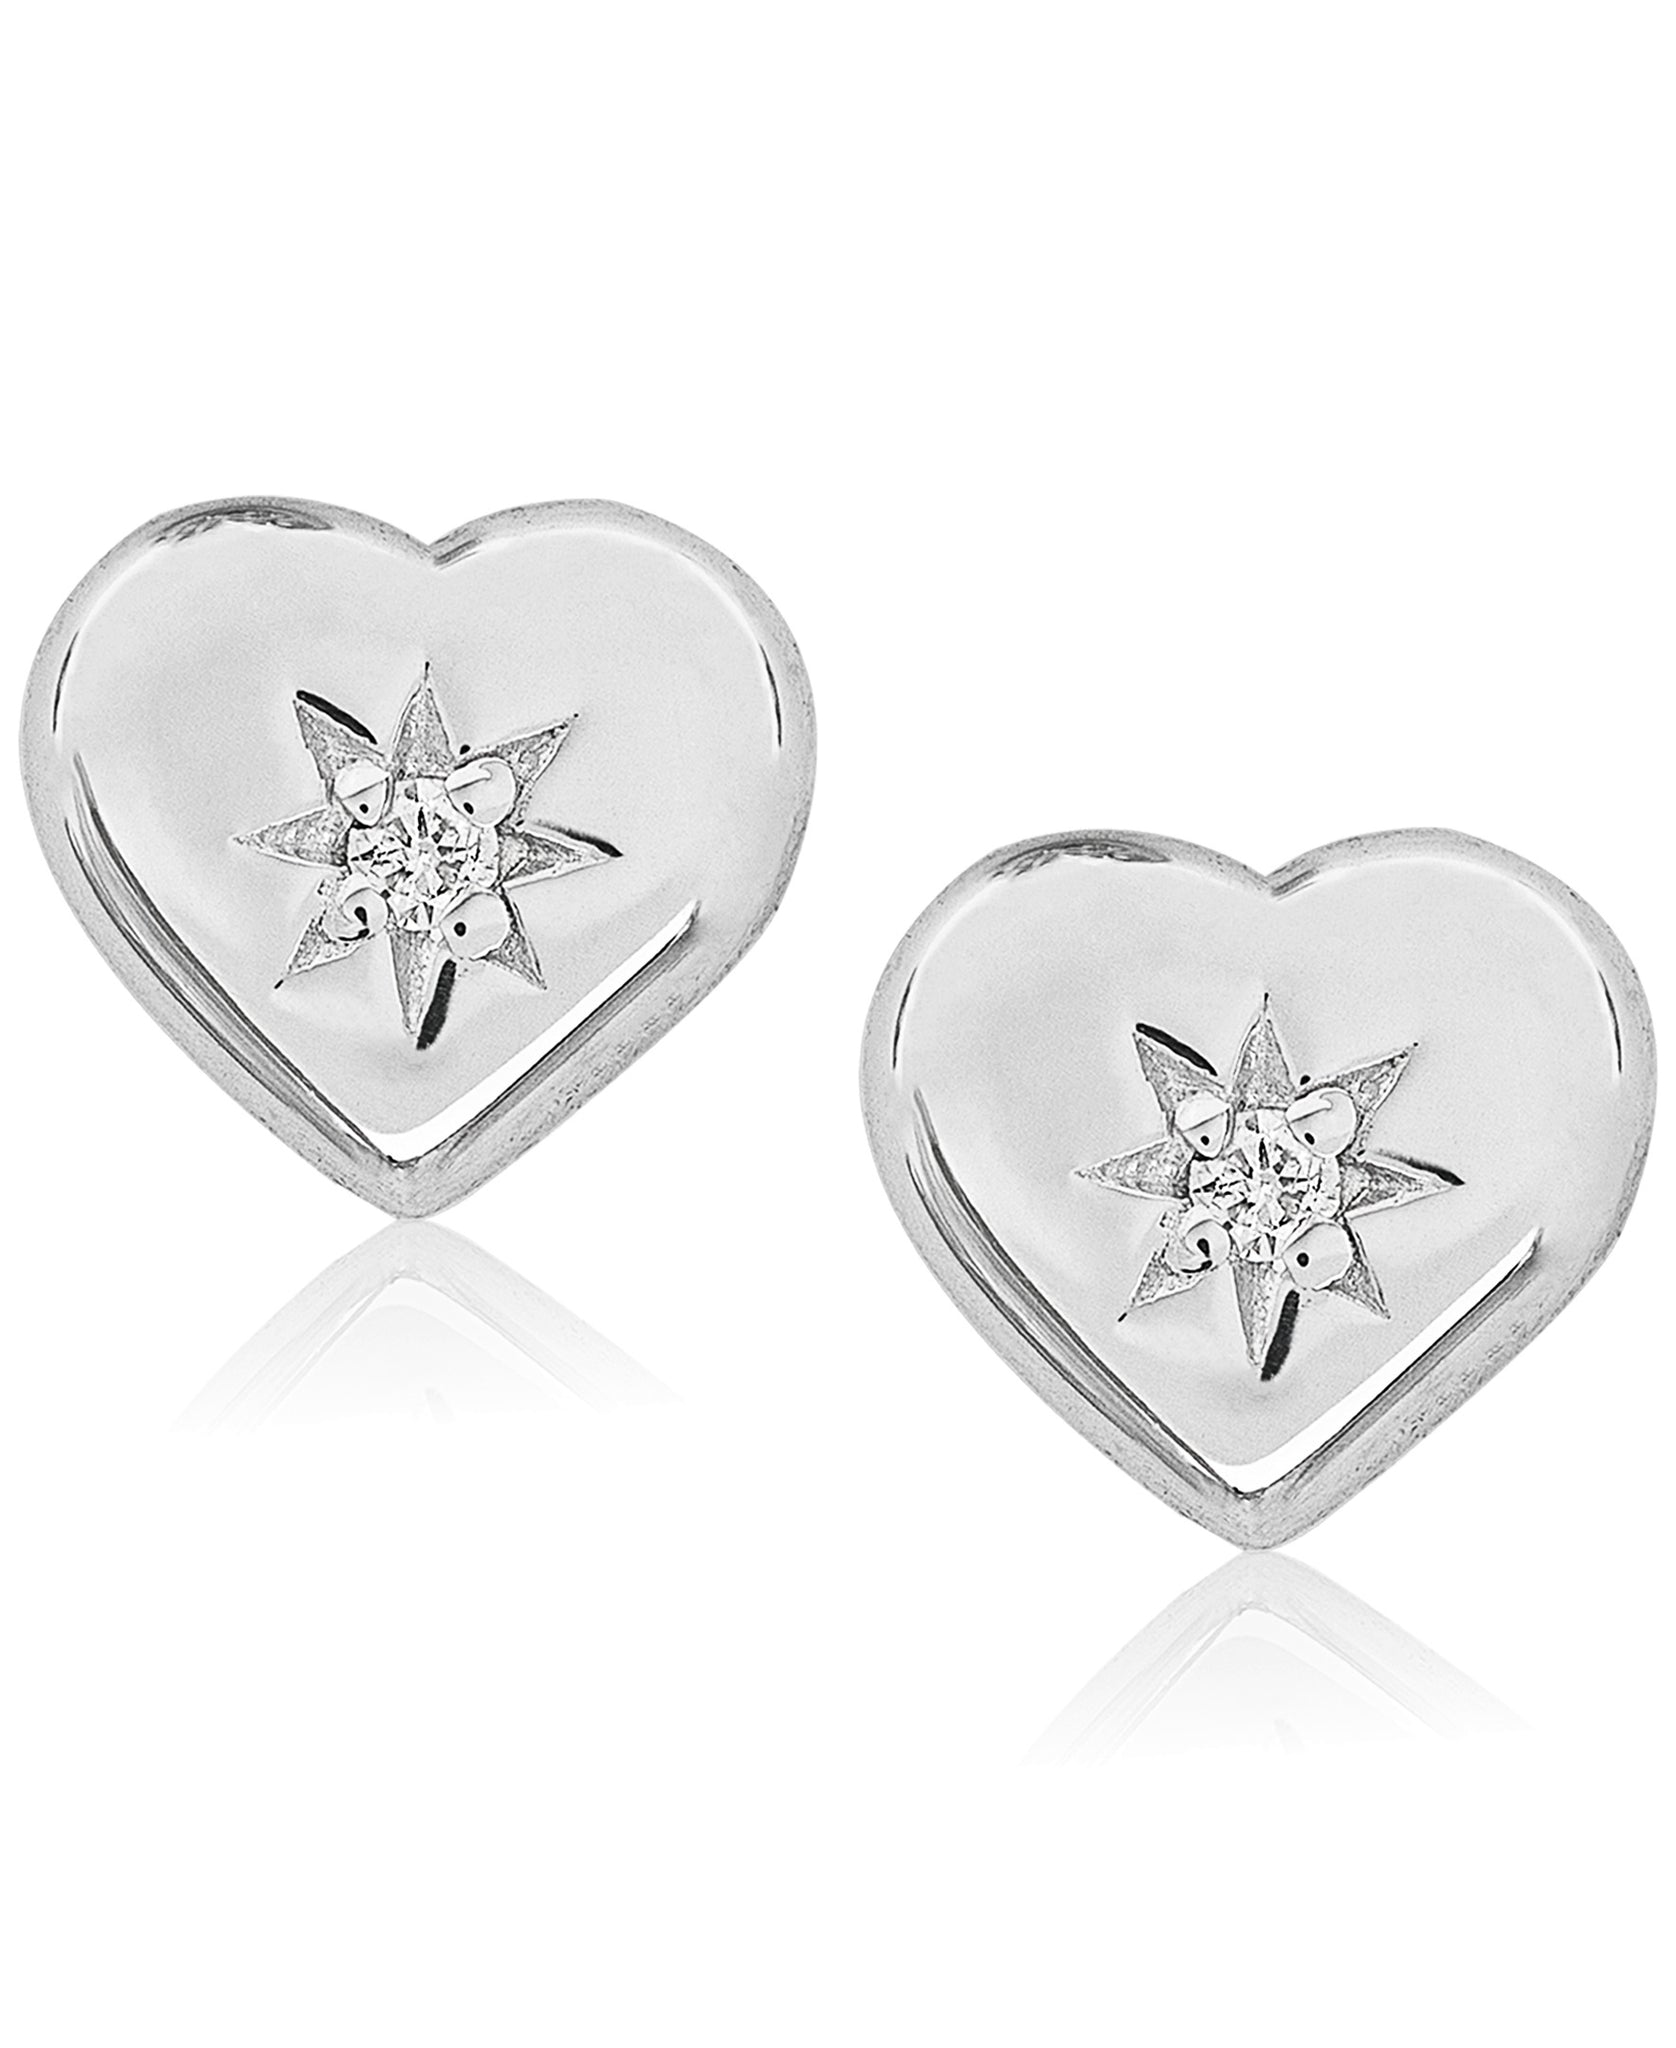 Children's Diamond Accent Heart Stud Earrings in Sterling Silver - Rhona Sutton Jewellery